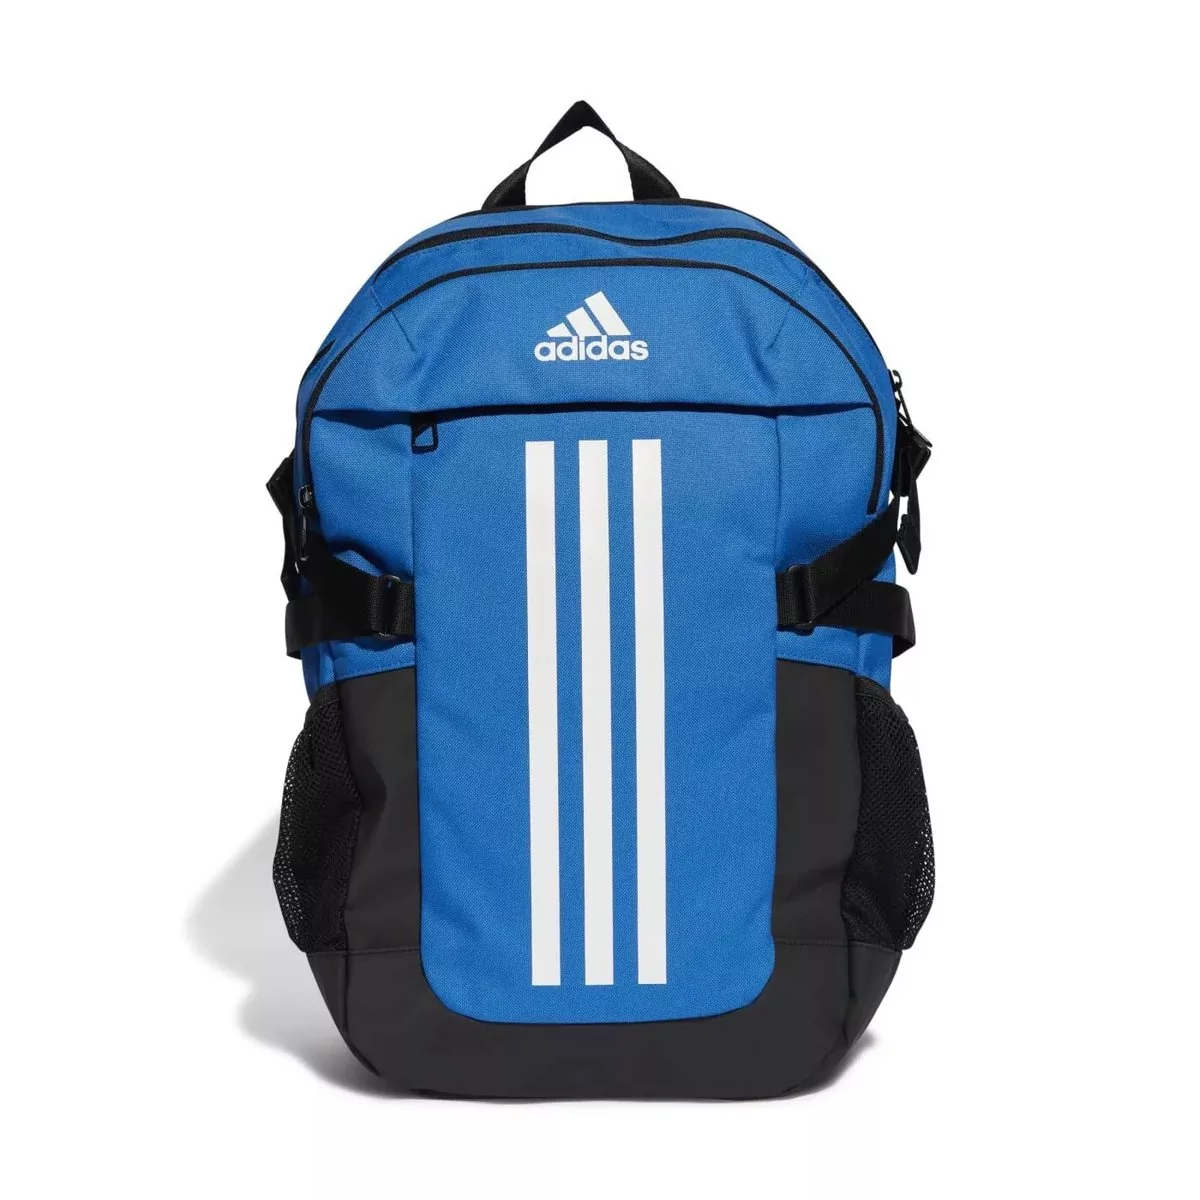 Adidas, Plecak sportowy Power VI Backpack, IL5815, Niebiesko-czarny - Ceny  i opinie na Skapiec.pl